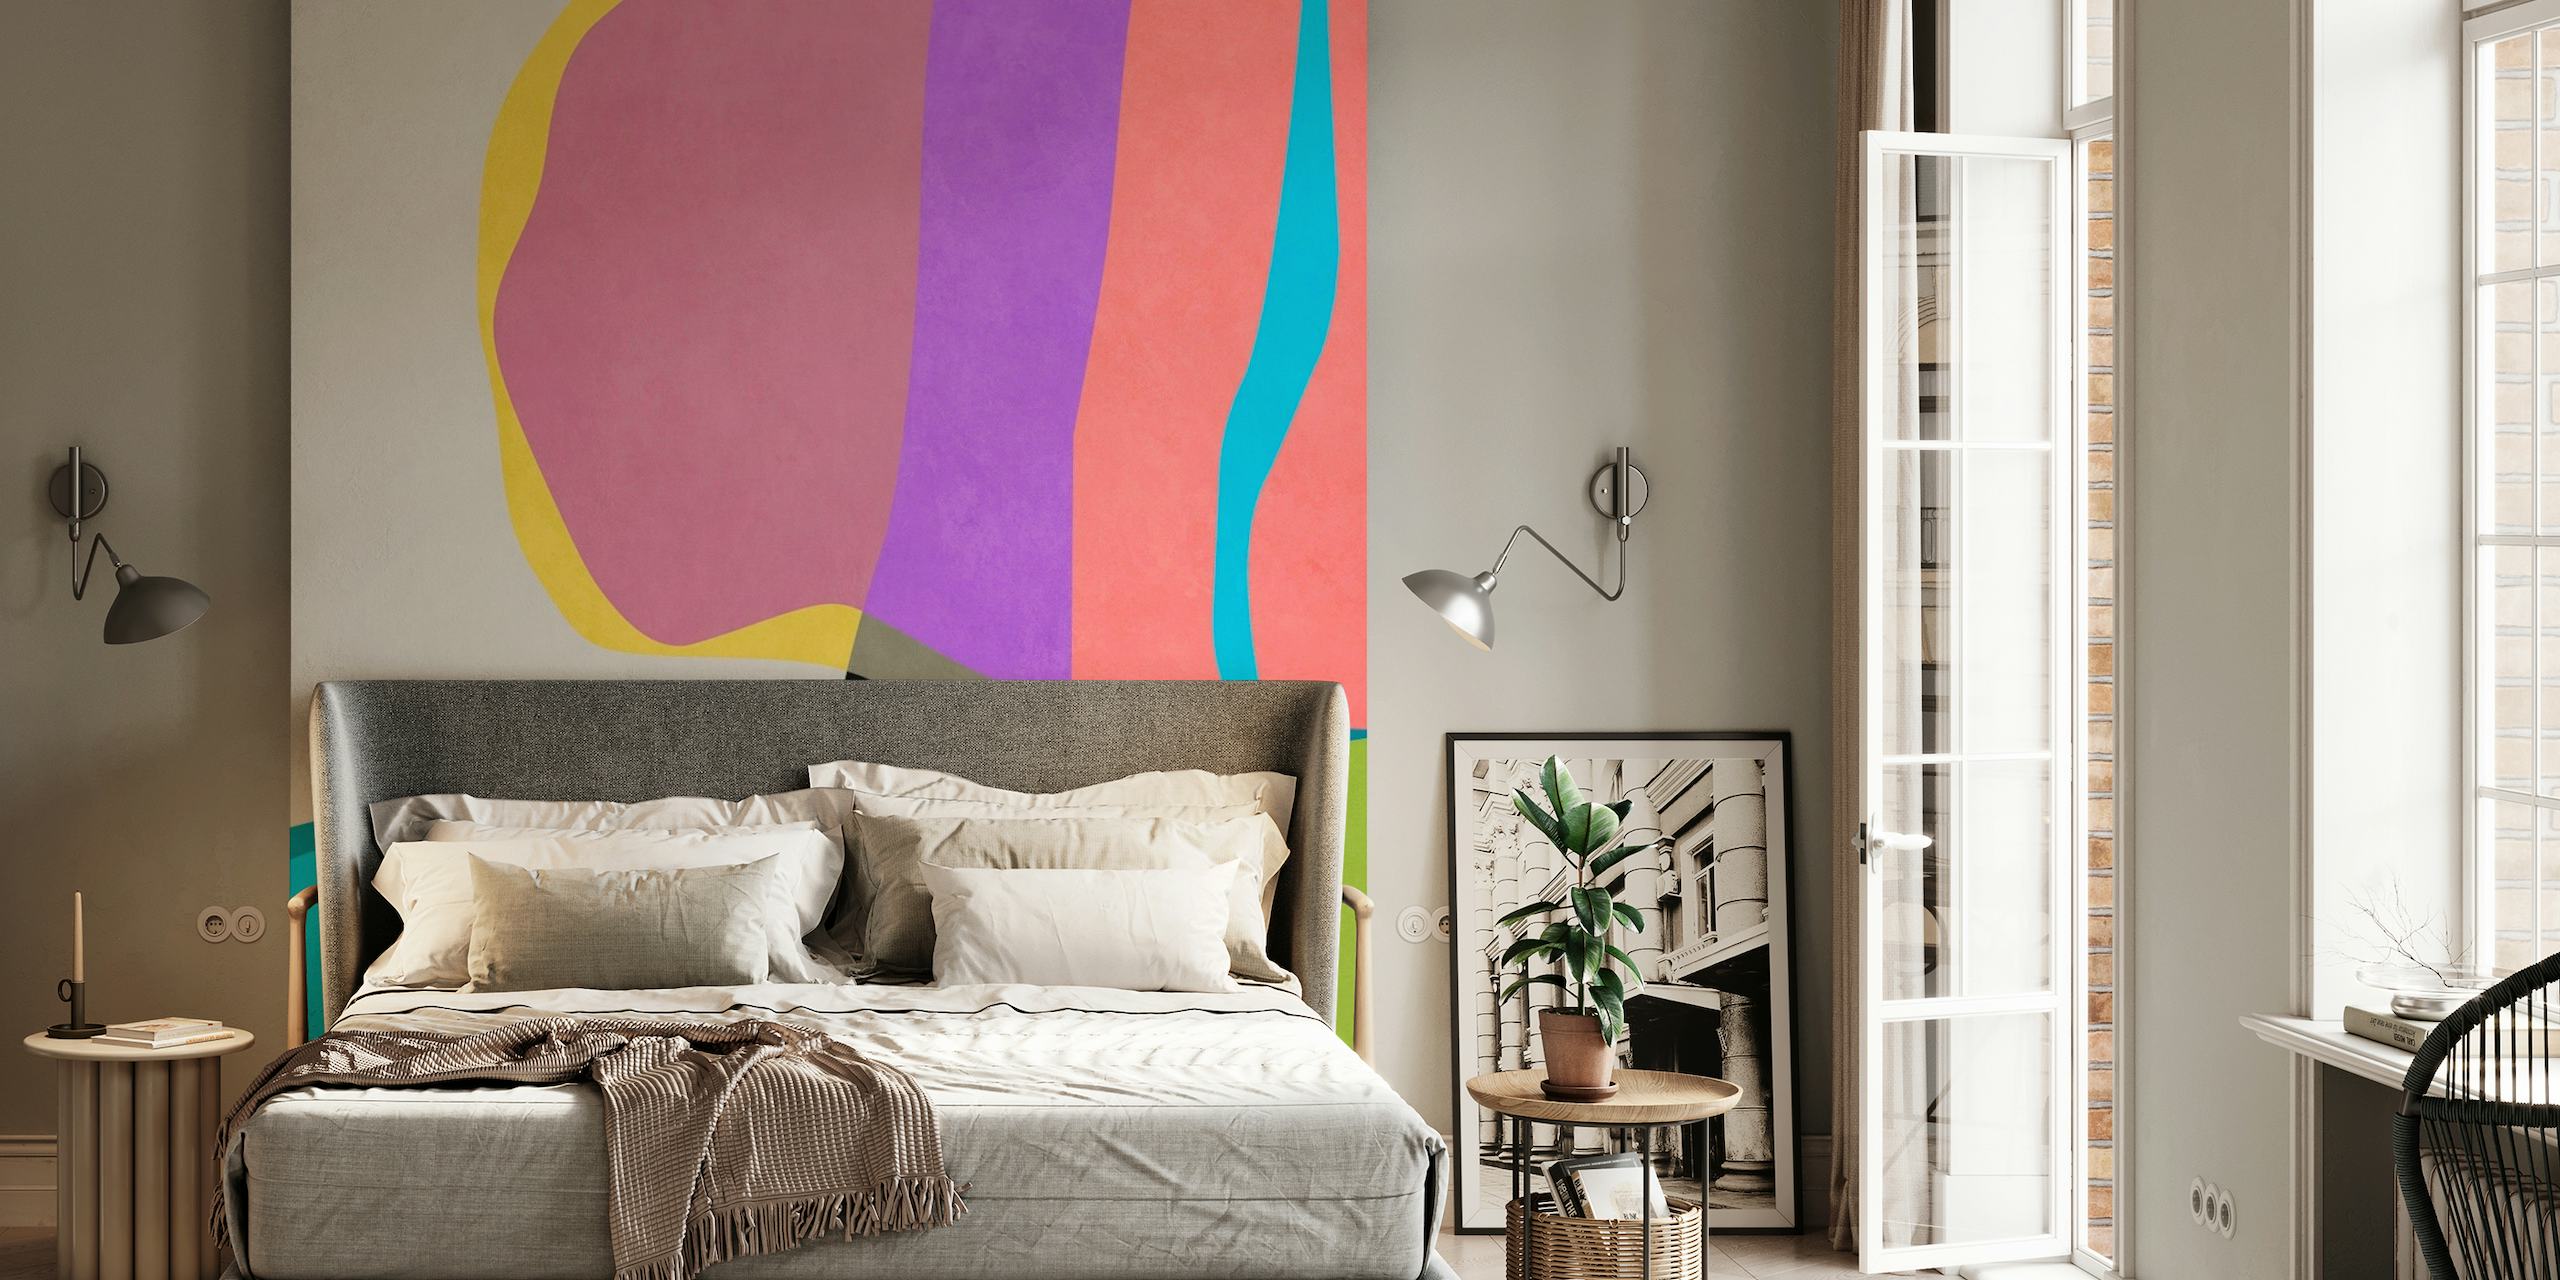 Mural abstracto con colores vibrantes y formas fluidas que crean una sensación de movimiento.